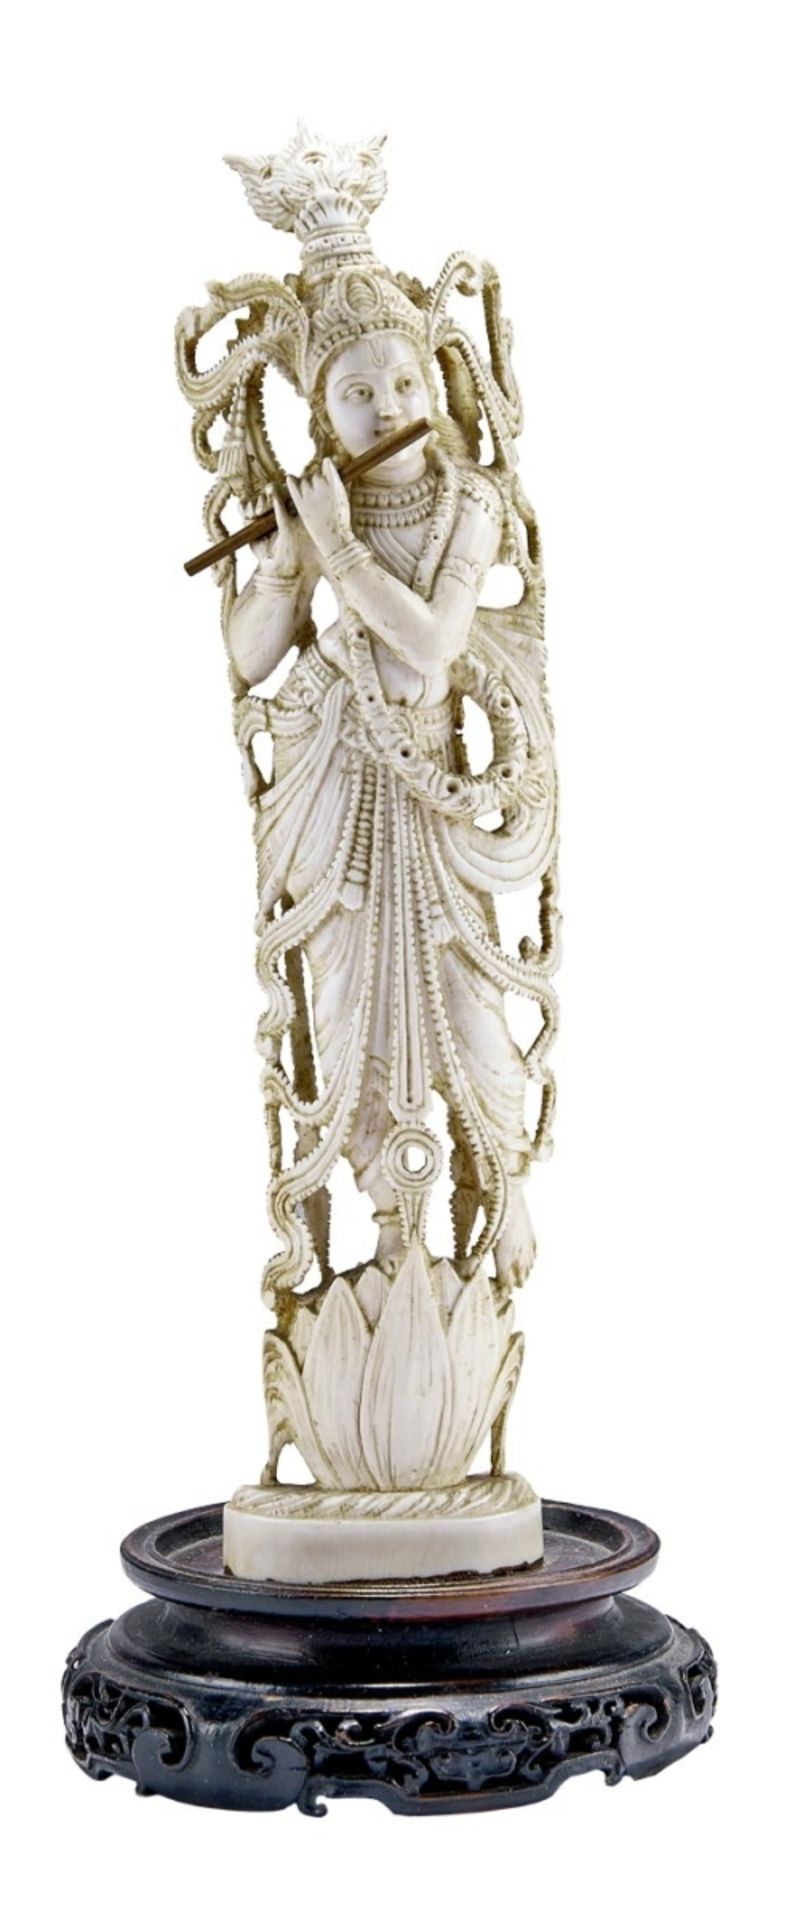 Figur des Flöte spielenden Krishna